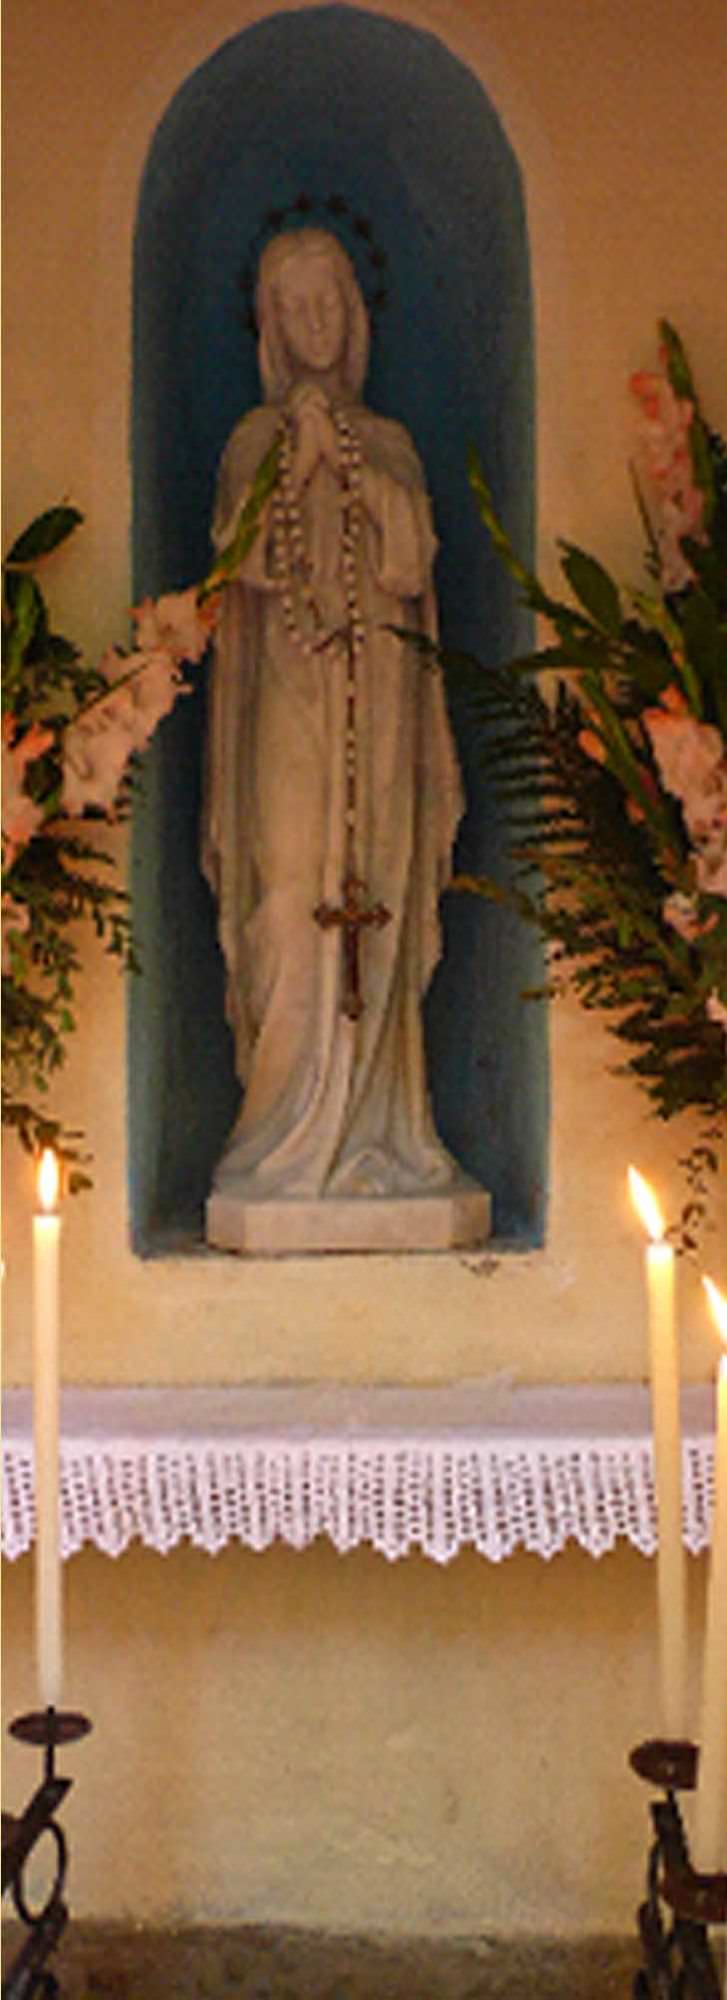 Al via i lavori per il restauro della “Madonnina” a Pietrasanta